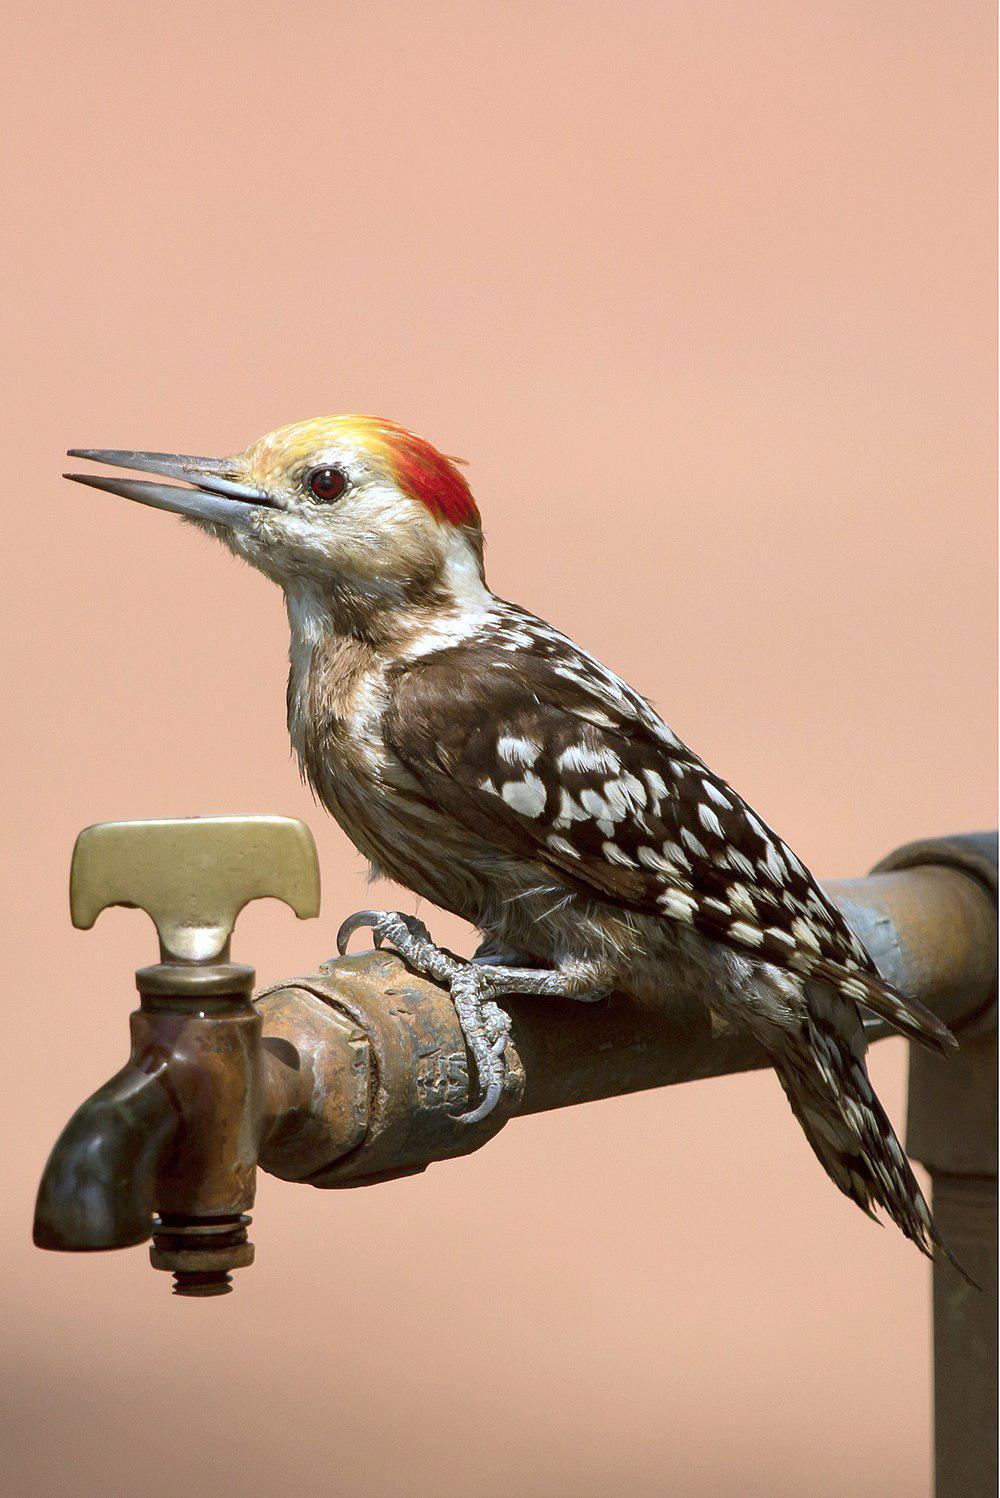 黄额斑啄木鸟 / Yellow-crowned Woodpecker / Leiopicus mahrattensis